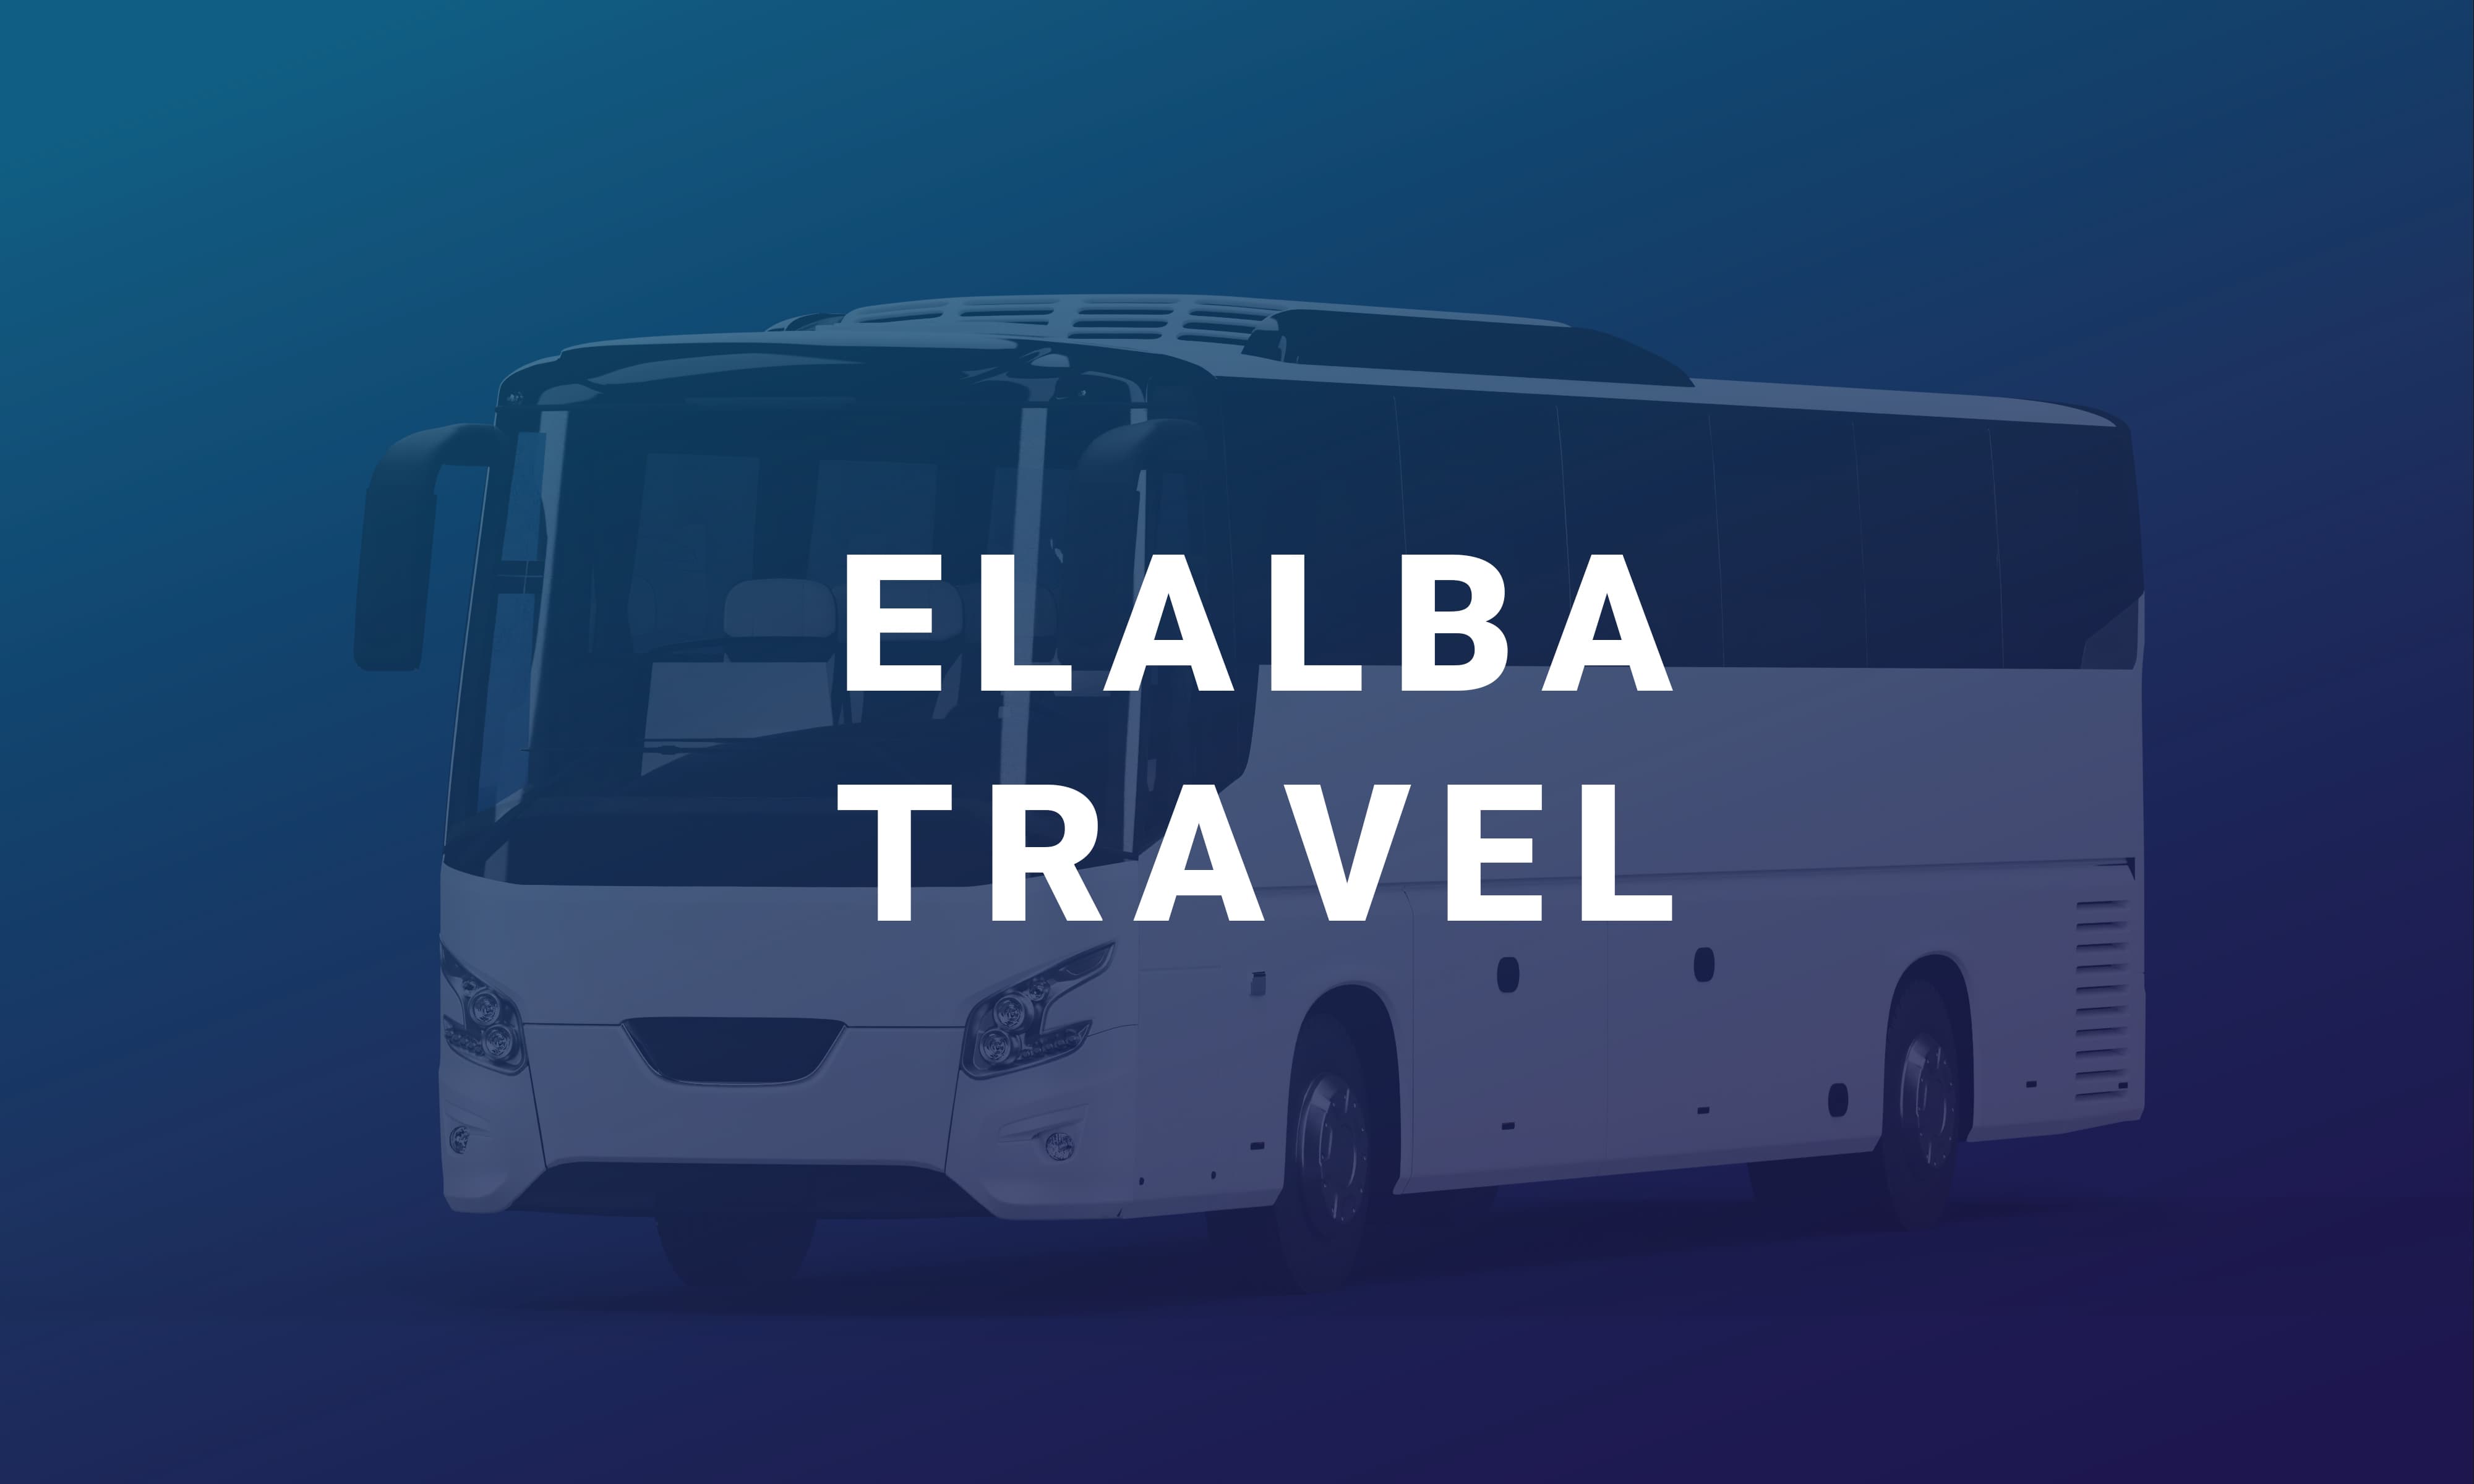 Elalba është një linjë ndërqytetase me qendër në Elbasan që ofron një shërbim çdo ditë për në Korçë dhe kthim.